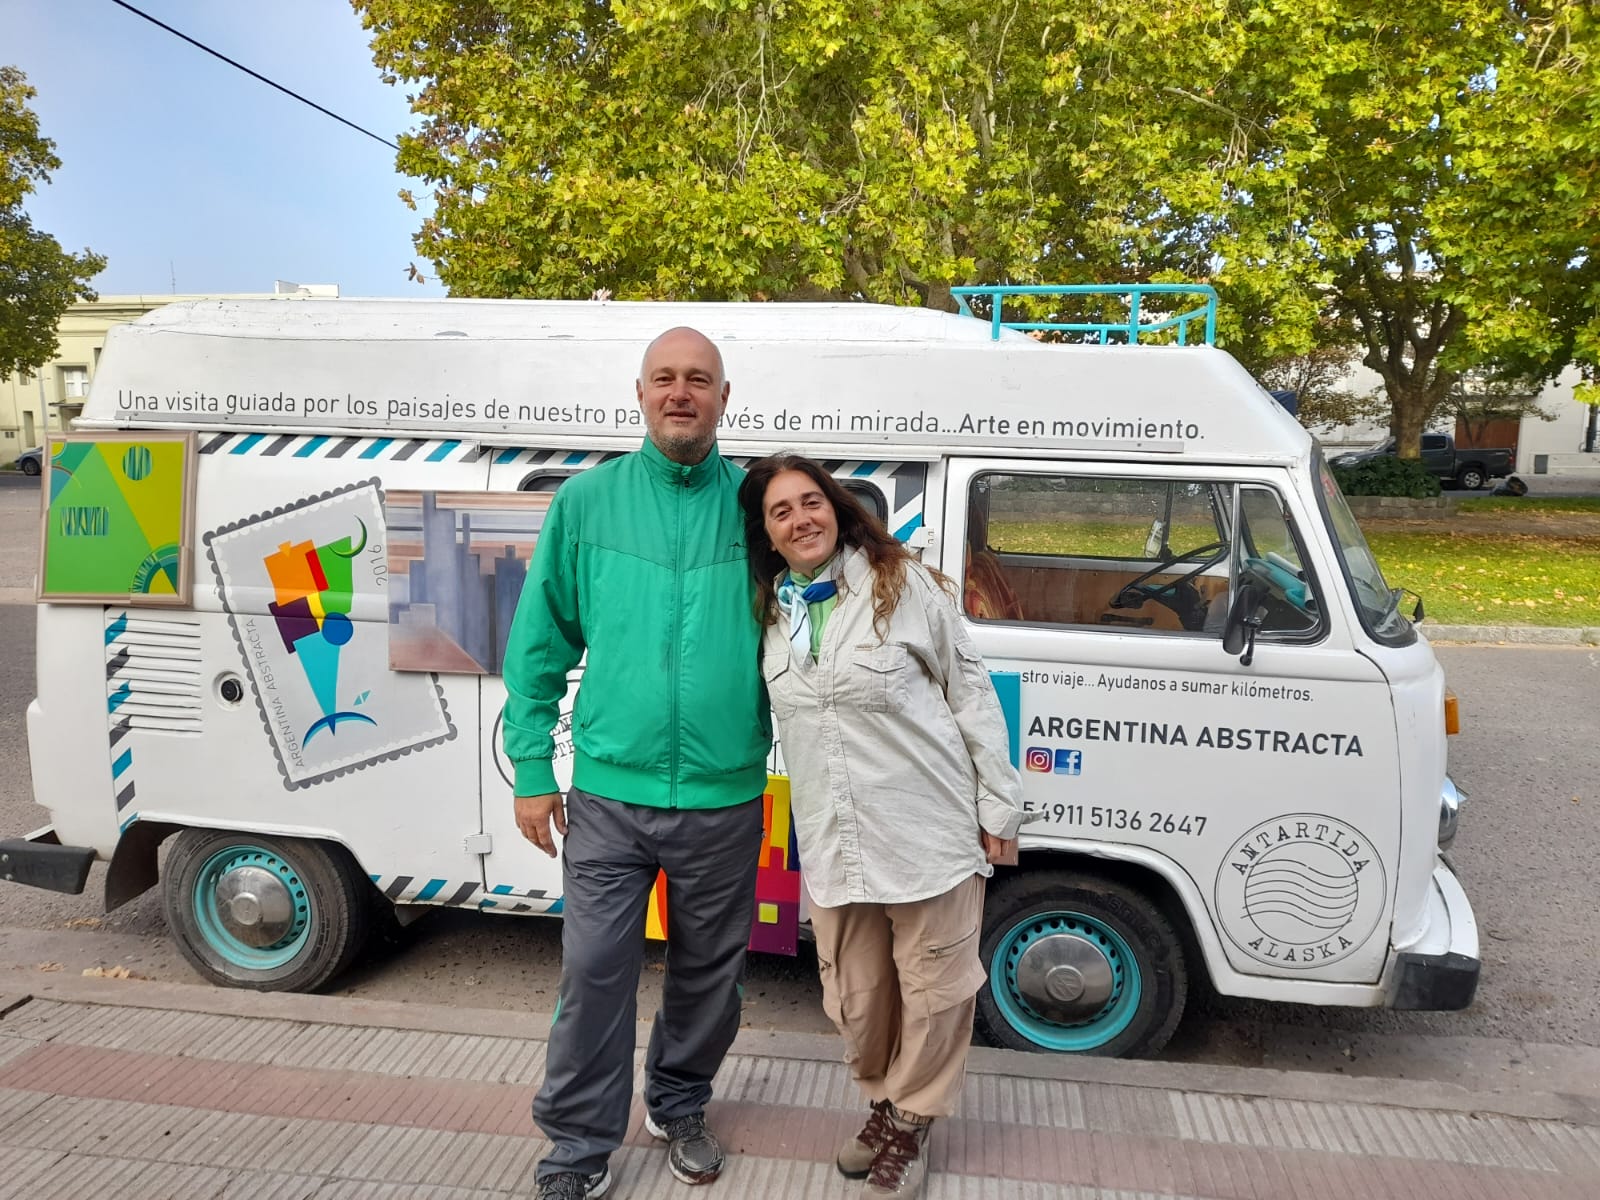 "Argentina Abstracta": Con el sueño de llegar a la Antártida, Mariela y Jorge recorren el país en kombi